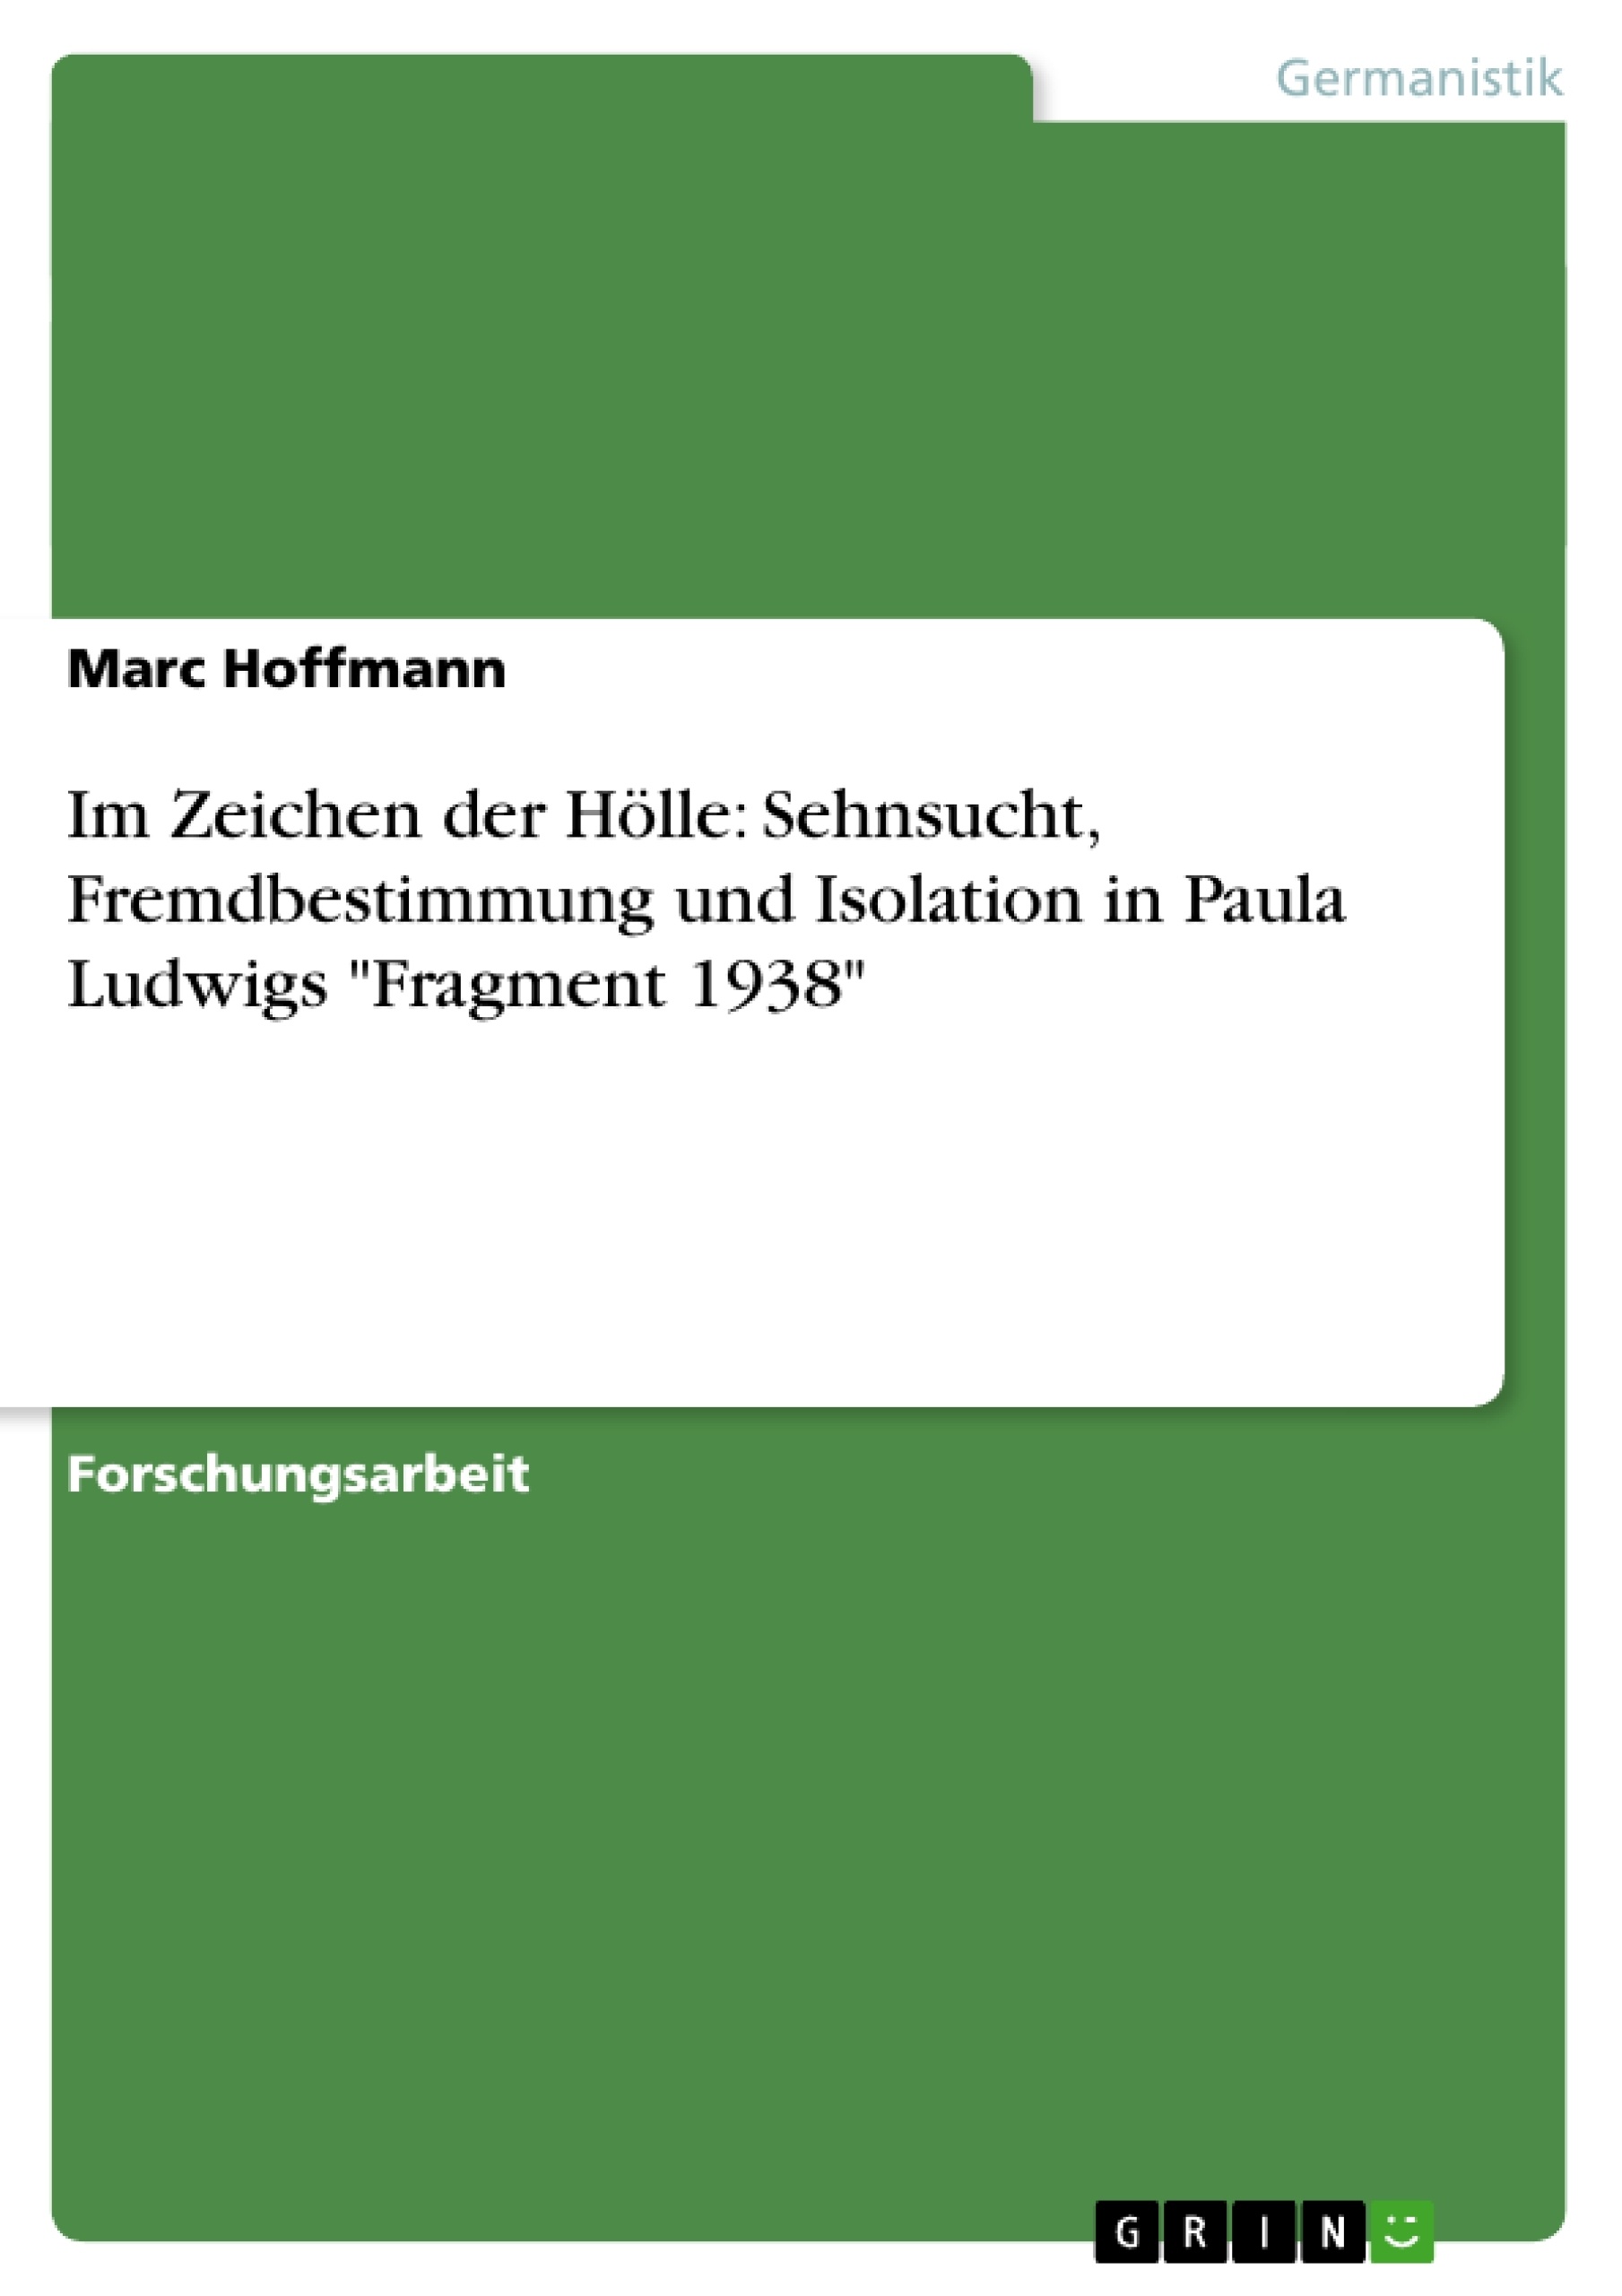 Title: Im Zeichen der Hölle: Sehnsucht, Fremdbestimmung und Isolation in Paula Ludwigs "Fragment 1938"